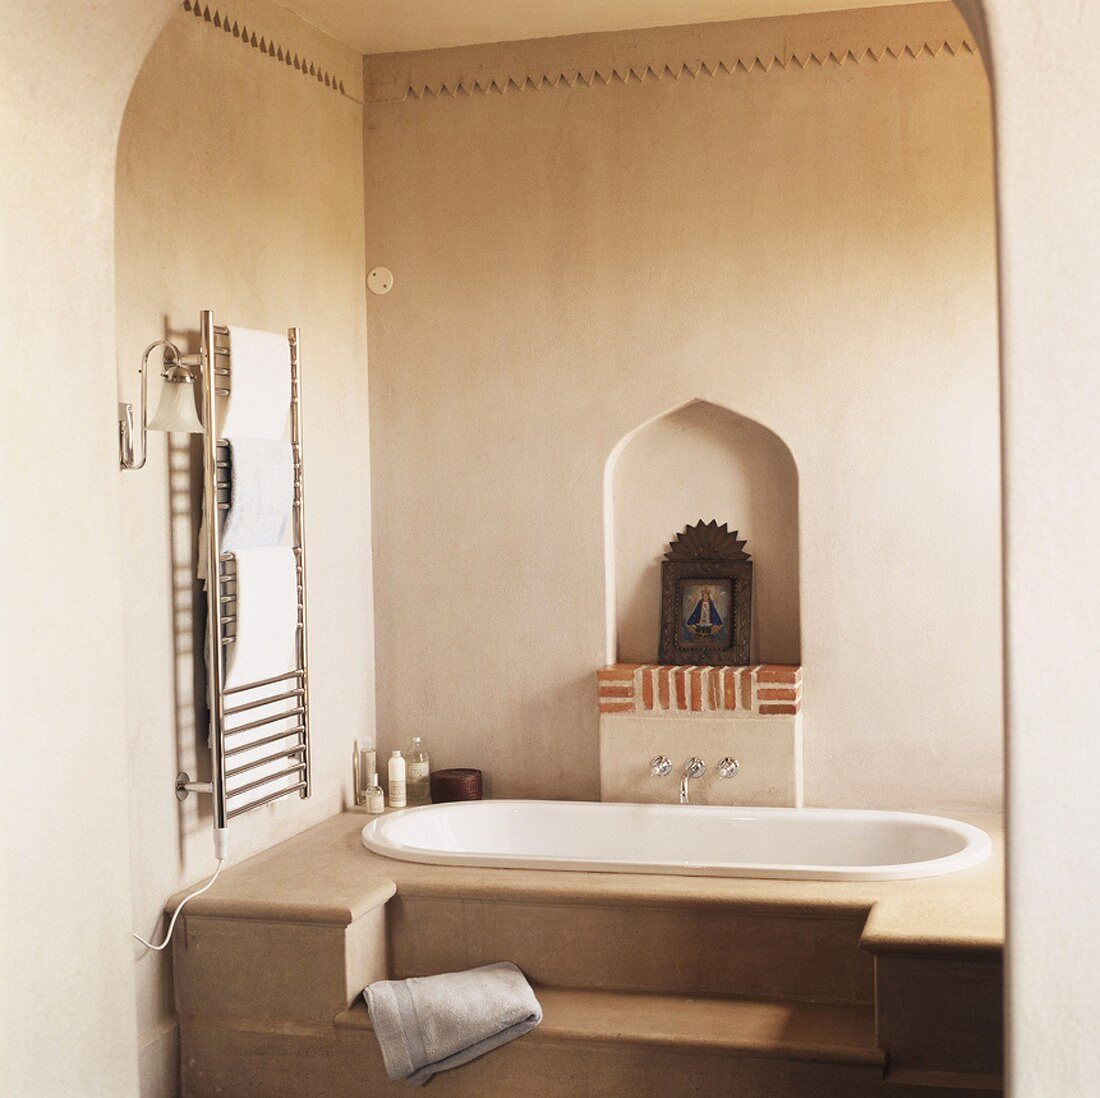 Ein Badezimmer im orientalischen Stil